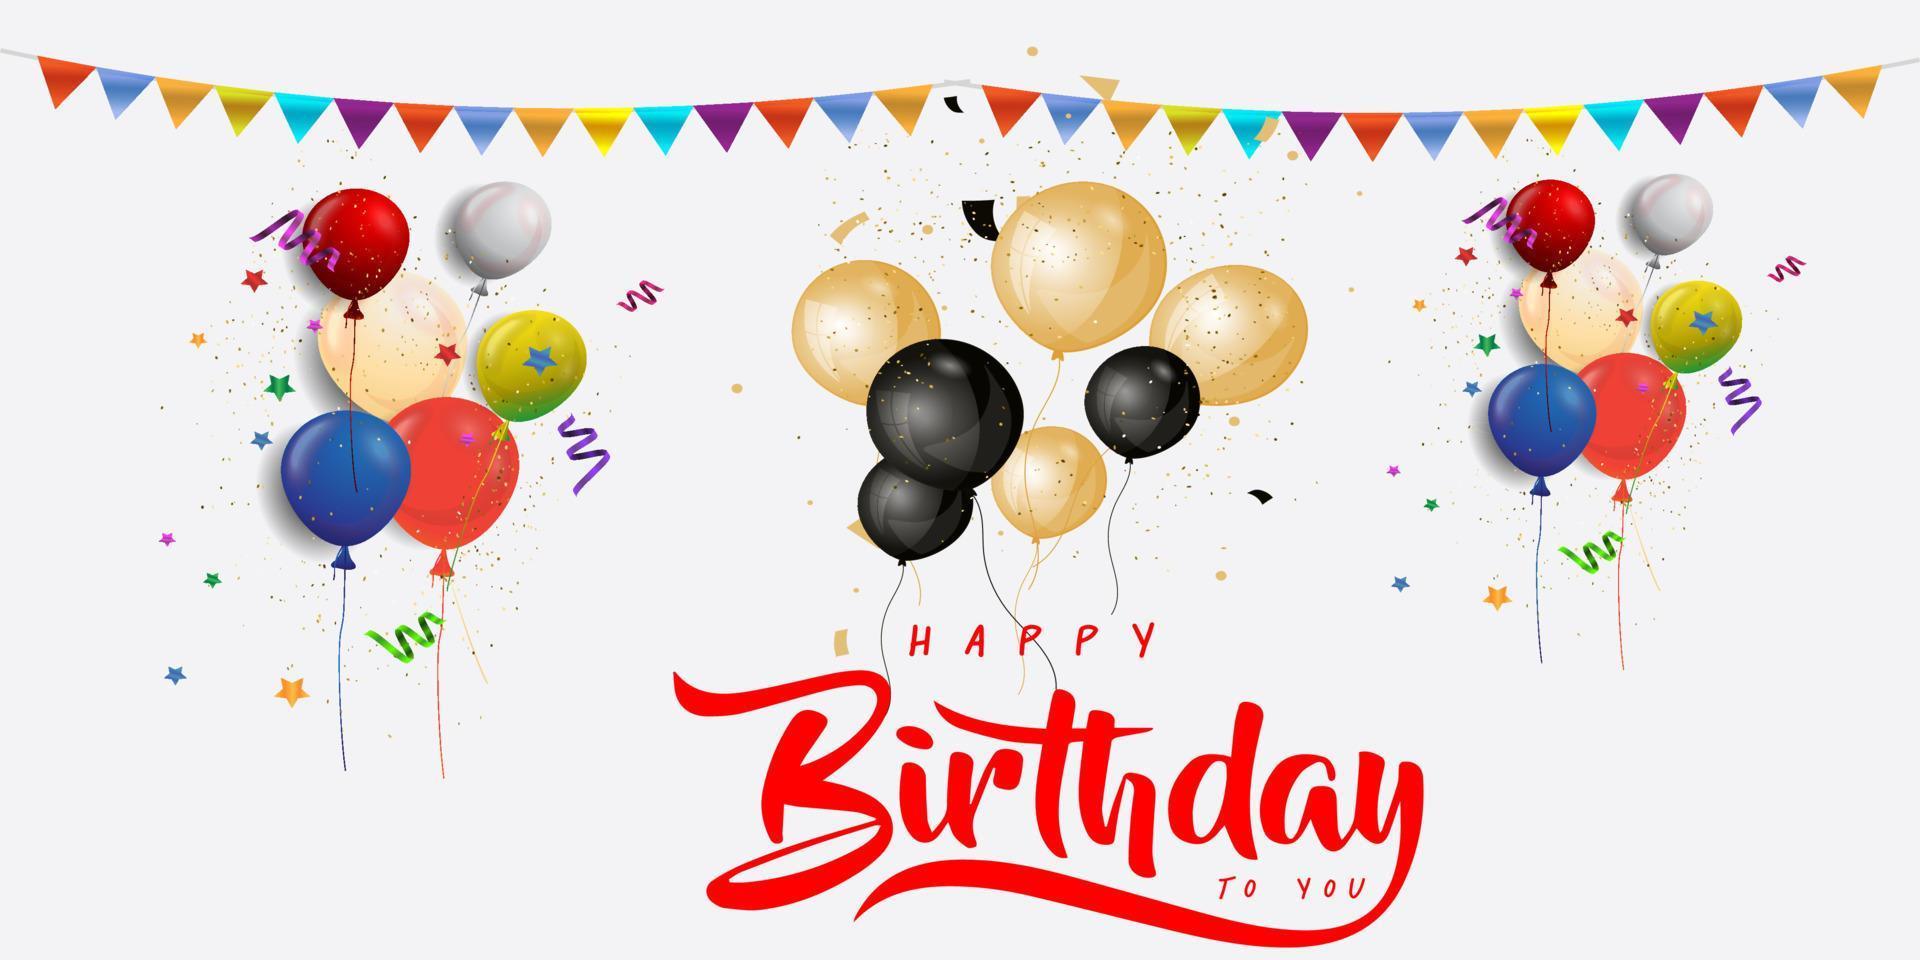 cumpleaños con vector libre de fondo de globo colorido realista. fondo de globo 3d realista para el cartel de la tarjeta de promoción de cumpleaños de vacaciones de fiesta vector libre.